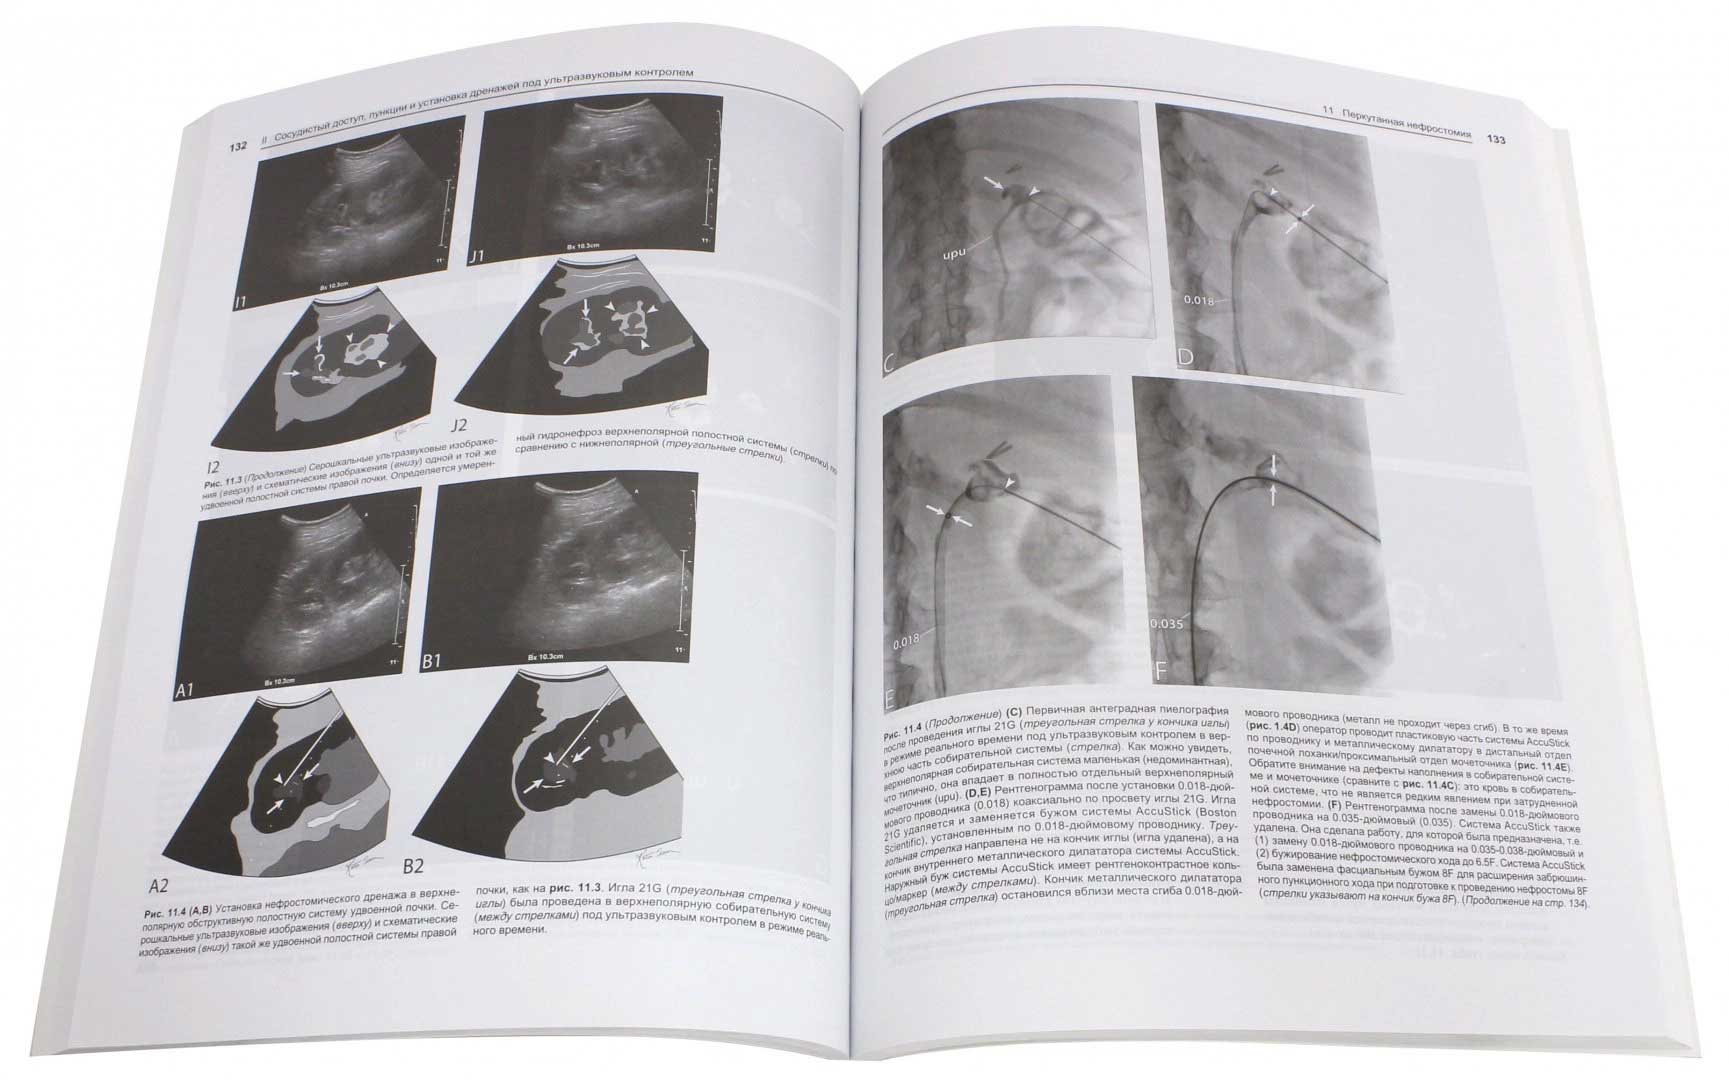 Пример страницы из книги "Интервенционные процедуры под ультразвуковым контролем" - Догра Викрэм, Монзер Абу-Юсеф, Браун Даниэль